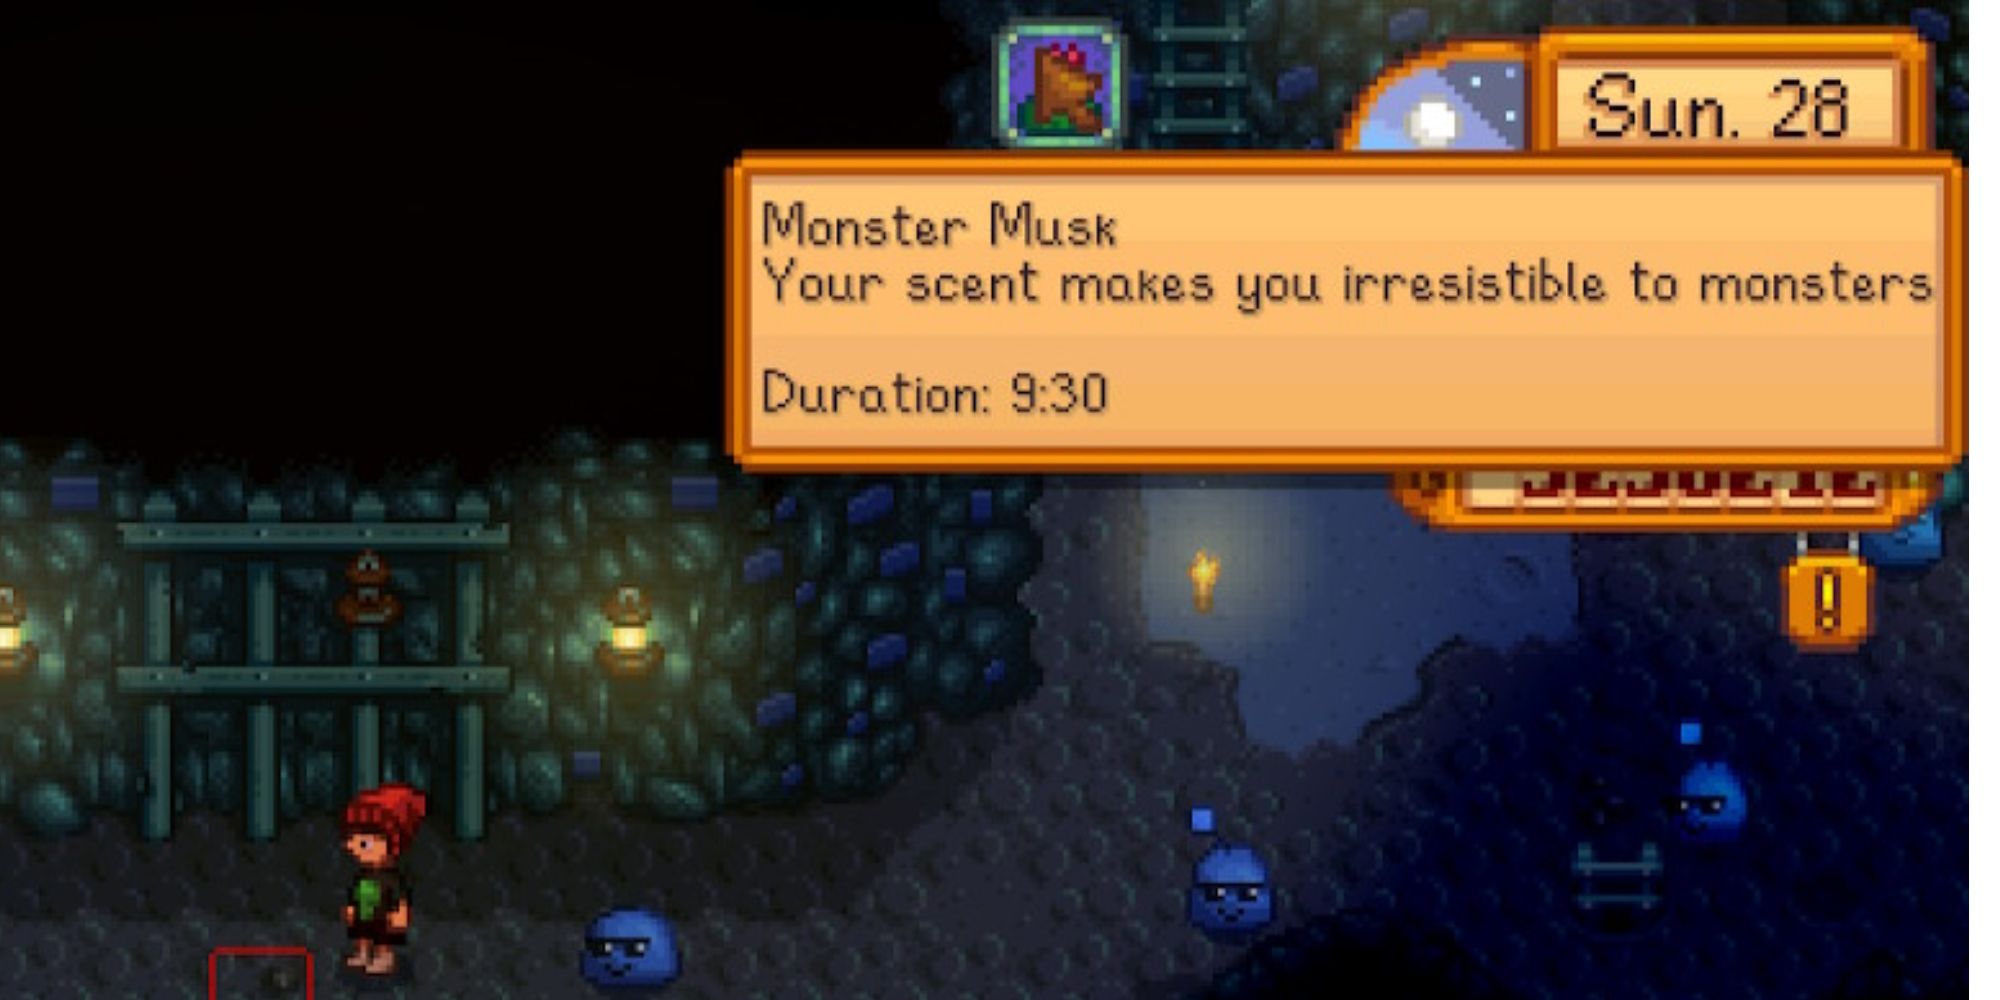 Monster Musk Buff